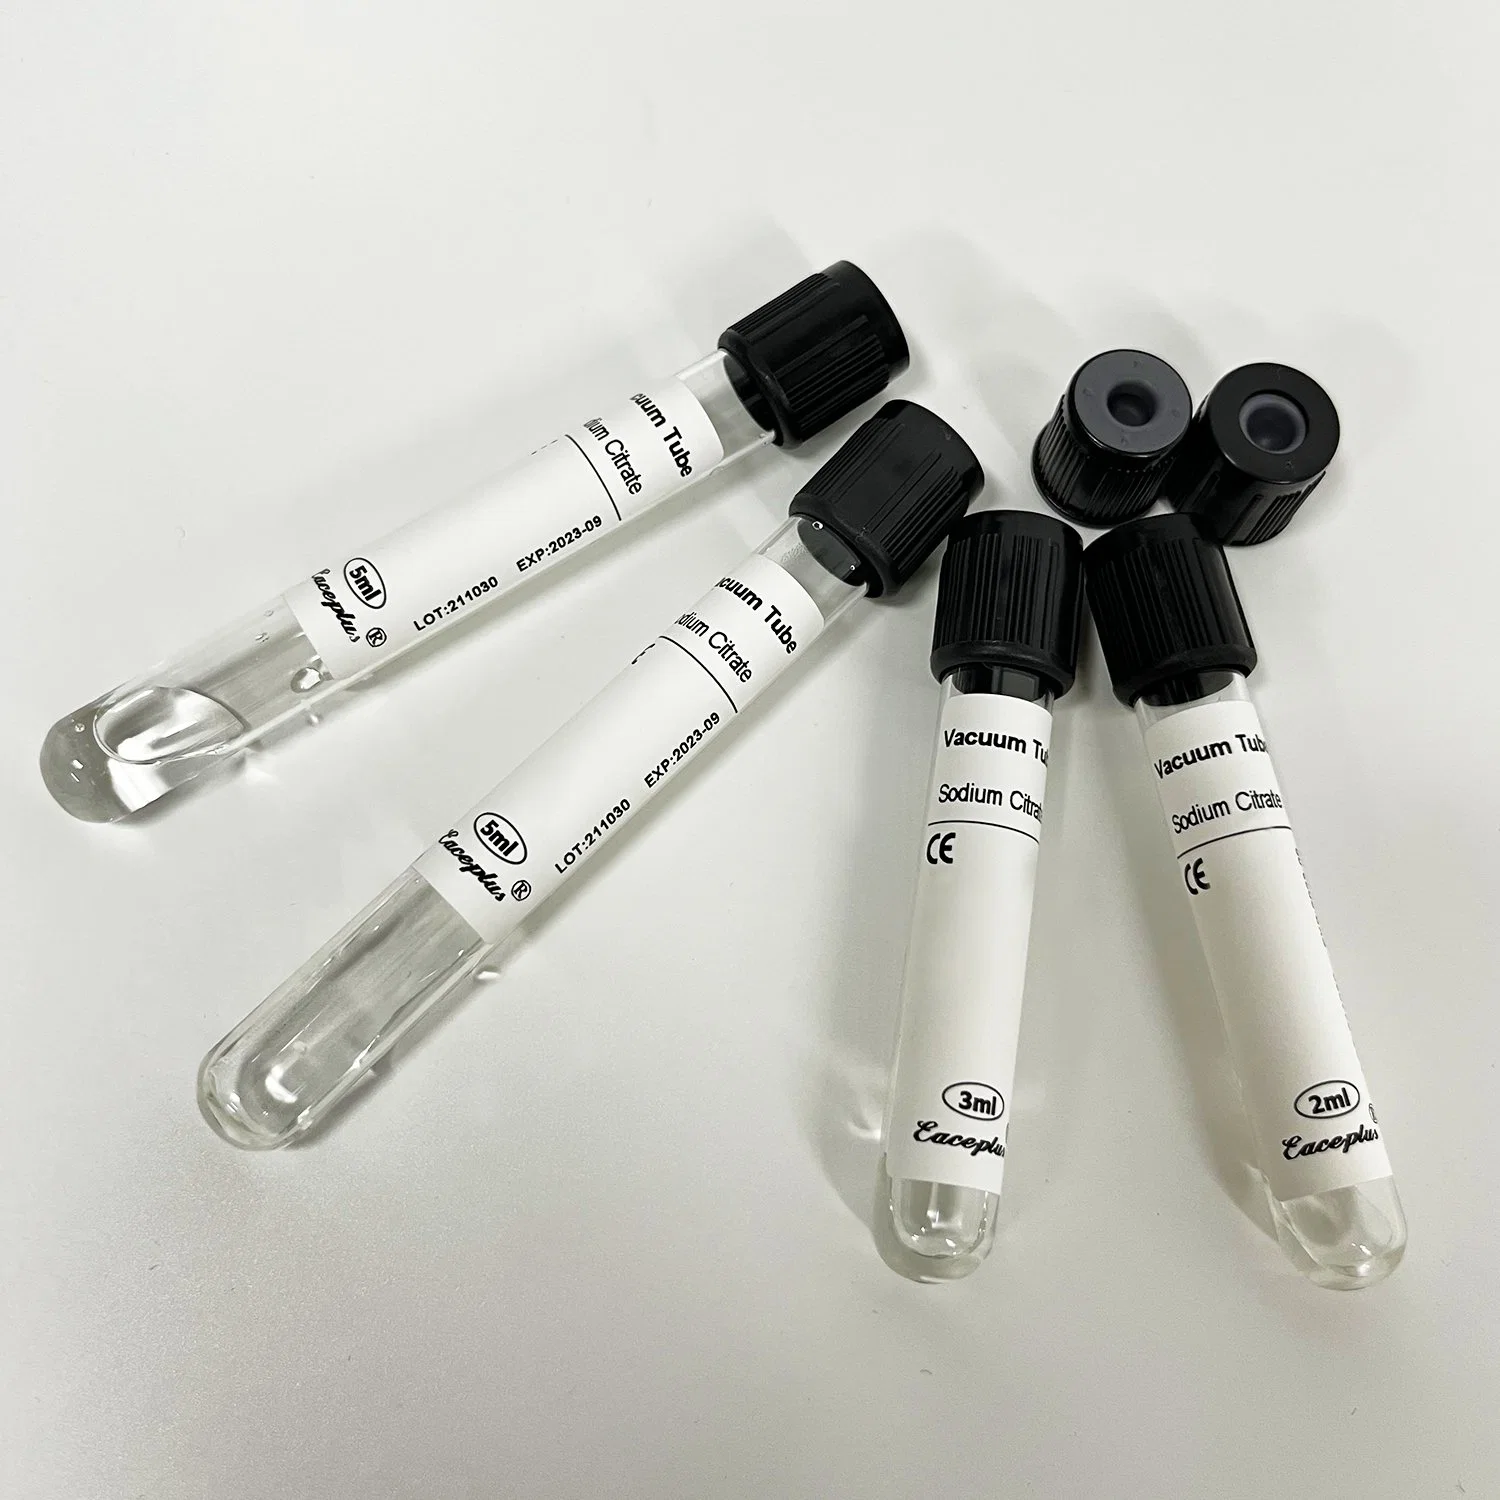 Siny Fabrication héparine Tube de sodium lithium aucun additif les consommables médicaux Test sanguin tube sous vide